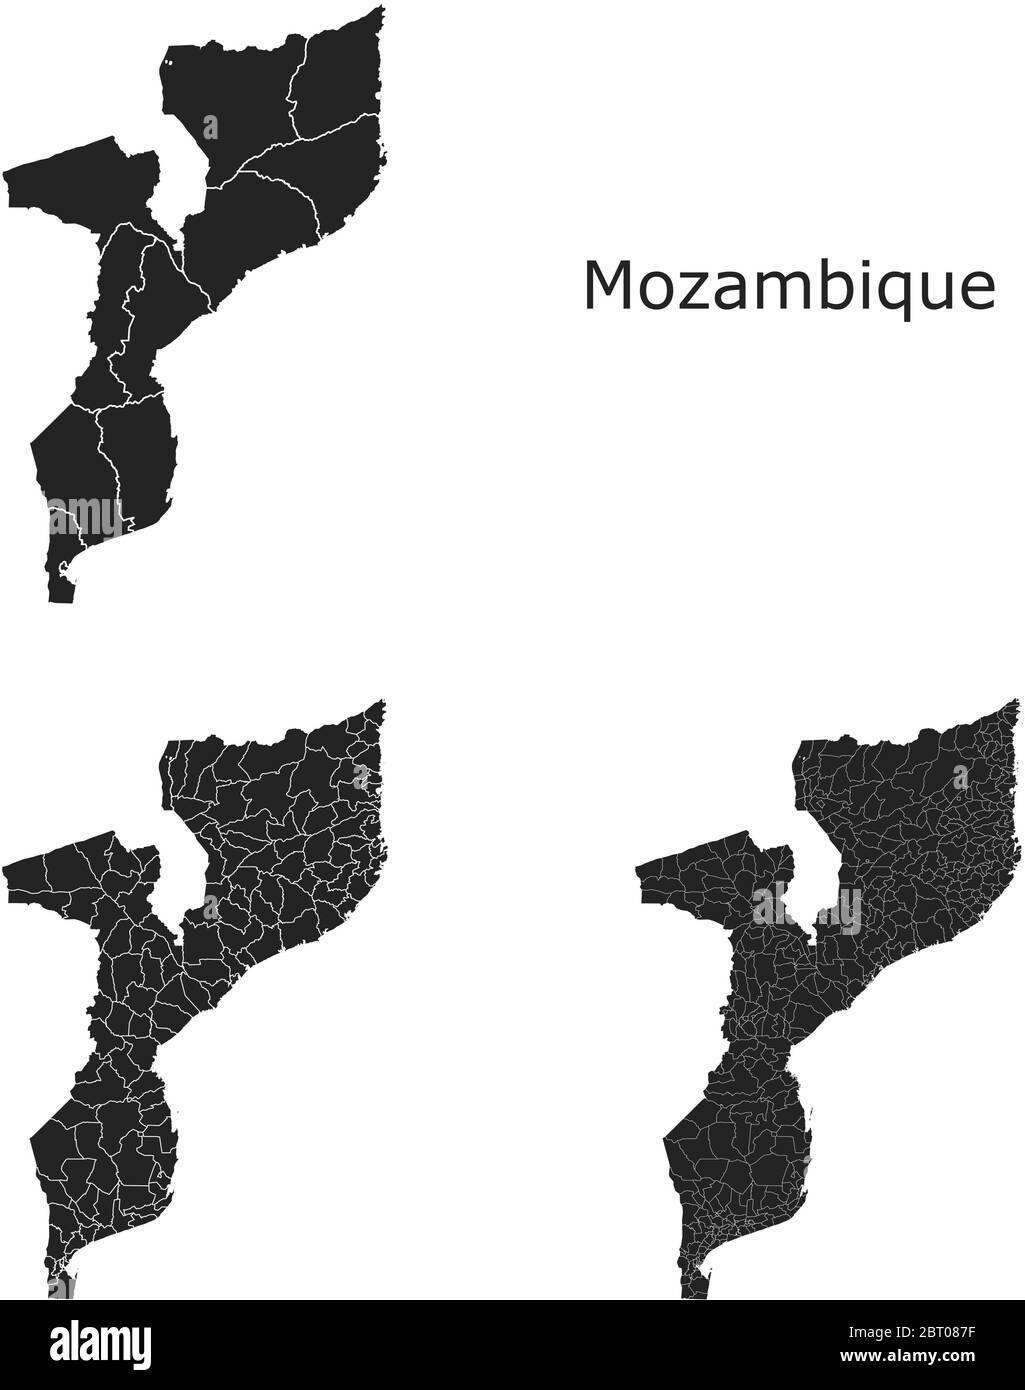 Mozambico mappe vettoriali con regioni amministrative, comuni, dipartimenti, frontiere Illustrazione Vettoriale